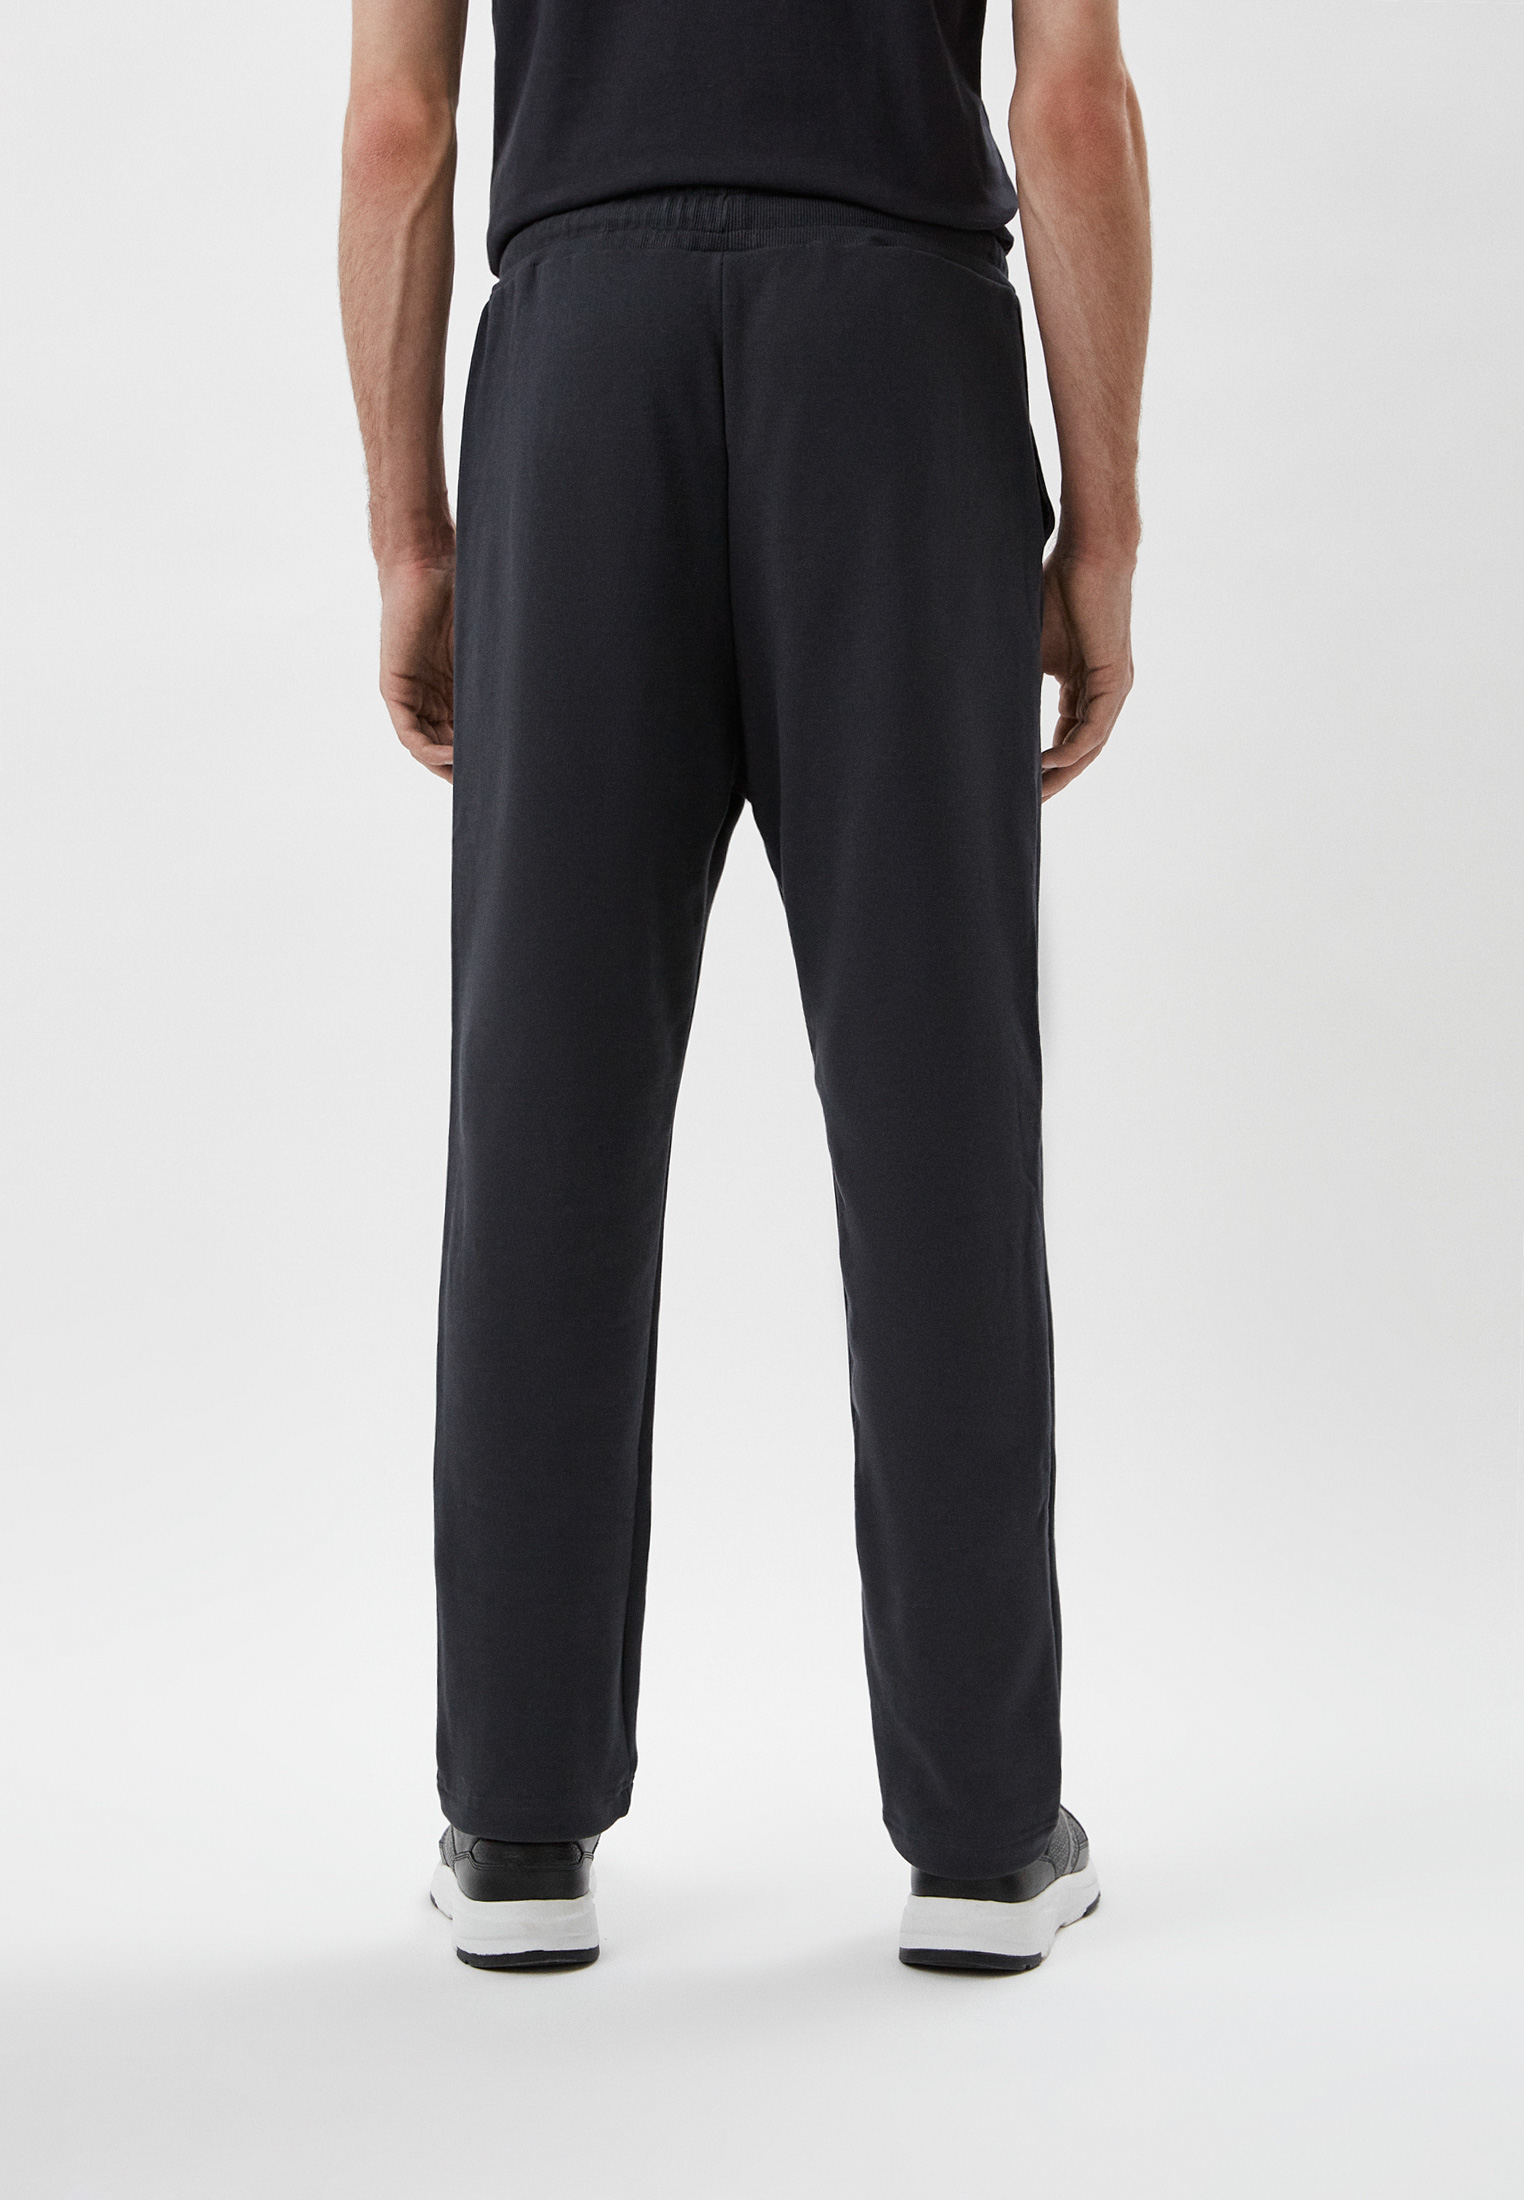 Мужские спортивные брюки Baldinini (Балдинини) M14: изображение 3